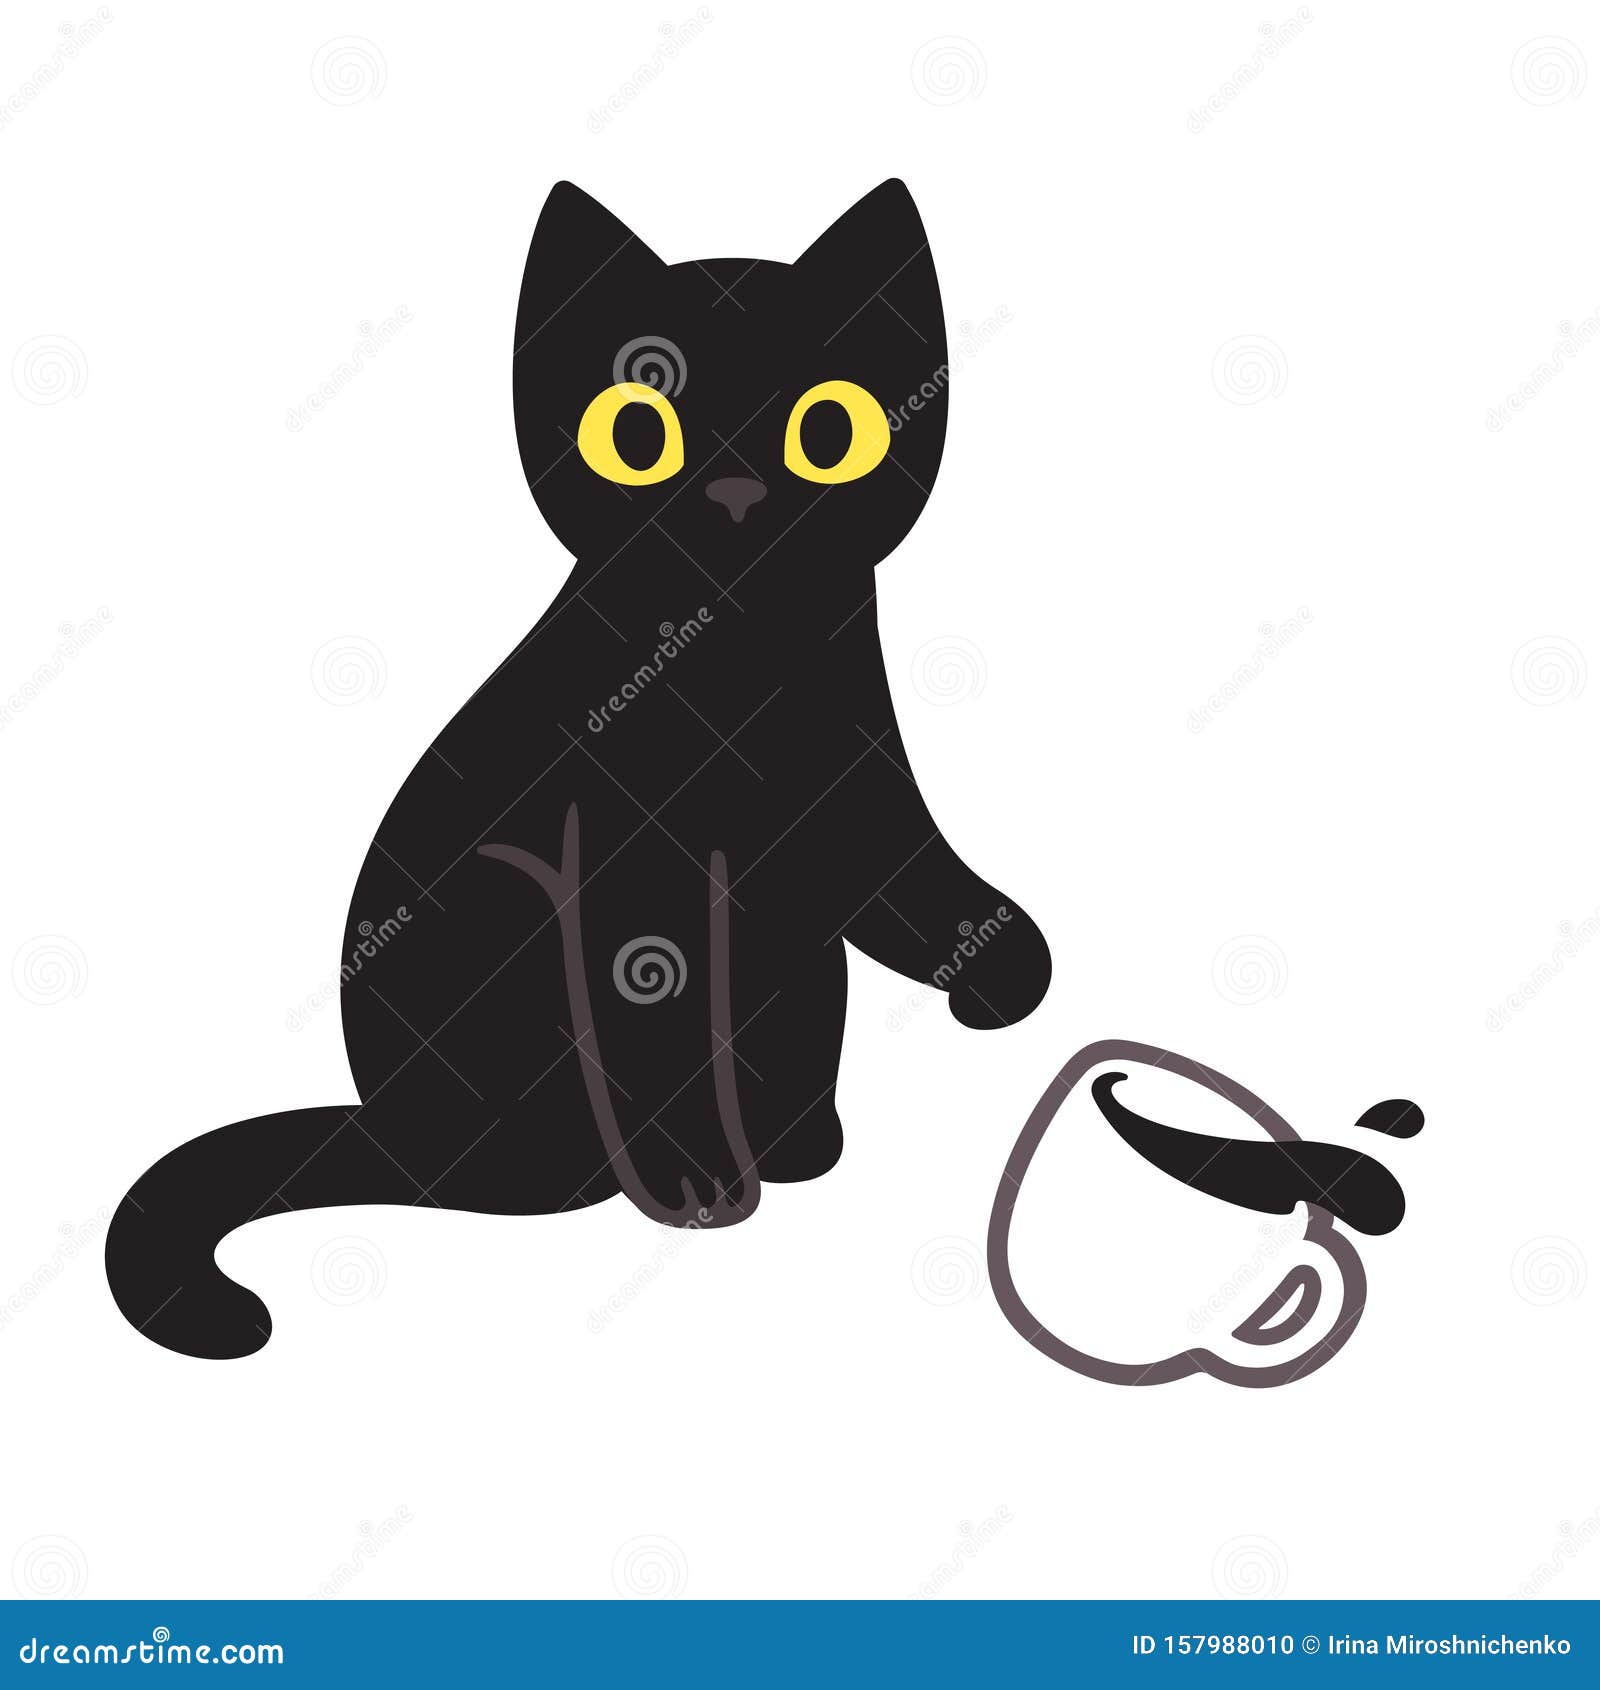 cat breaking cup